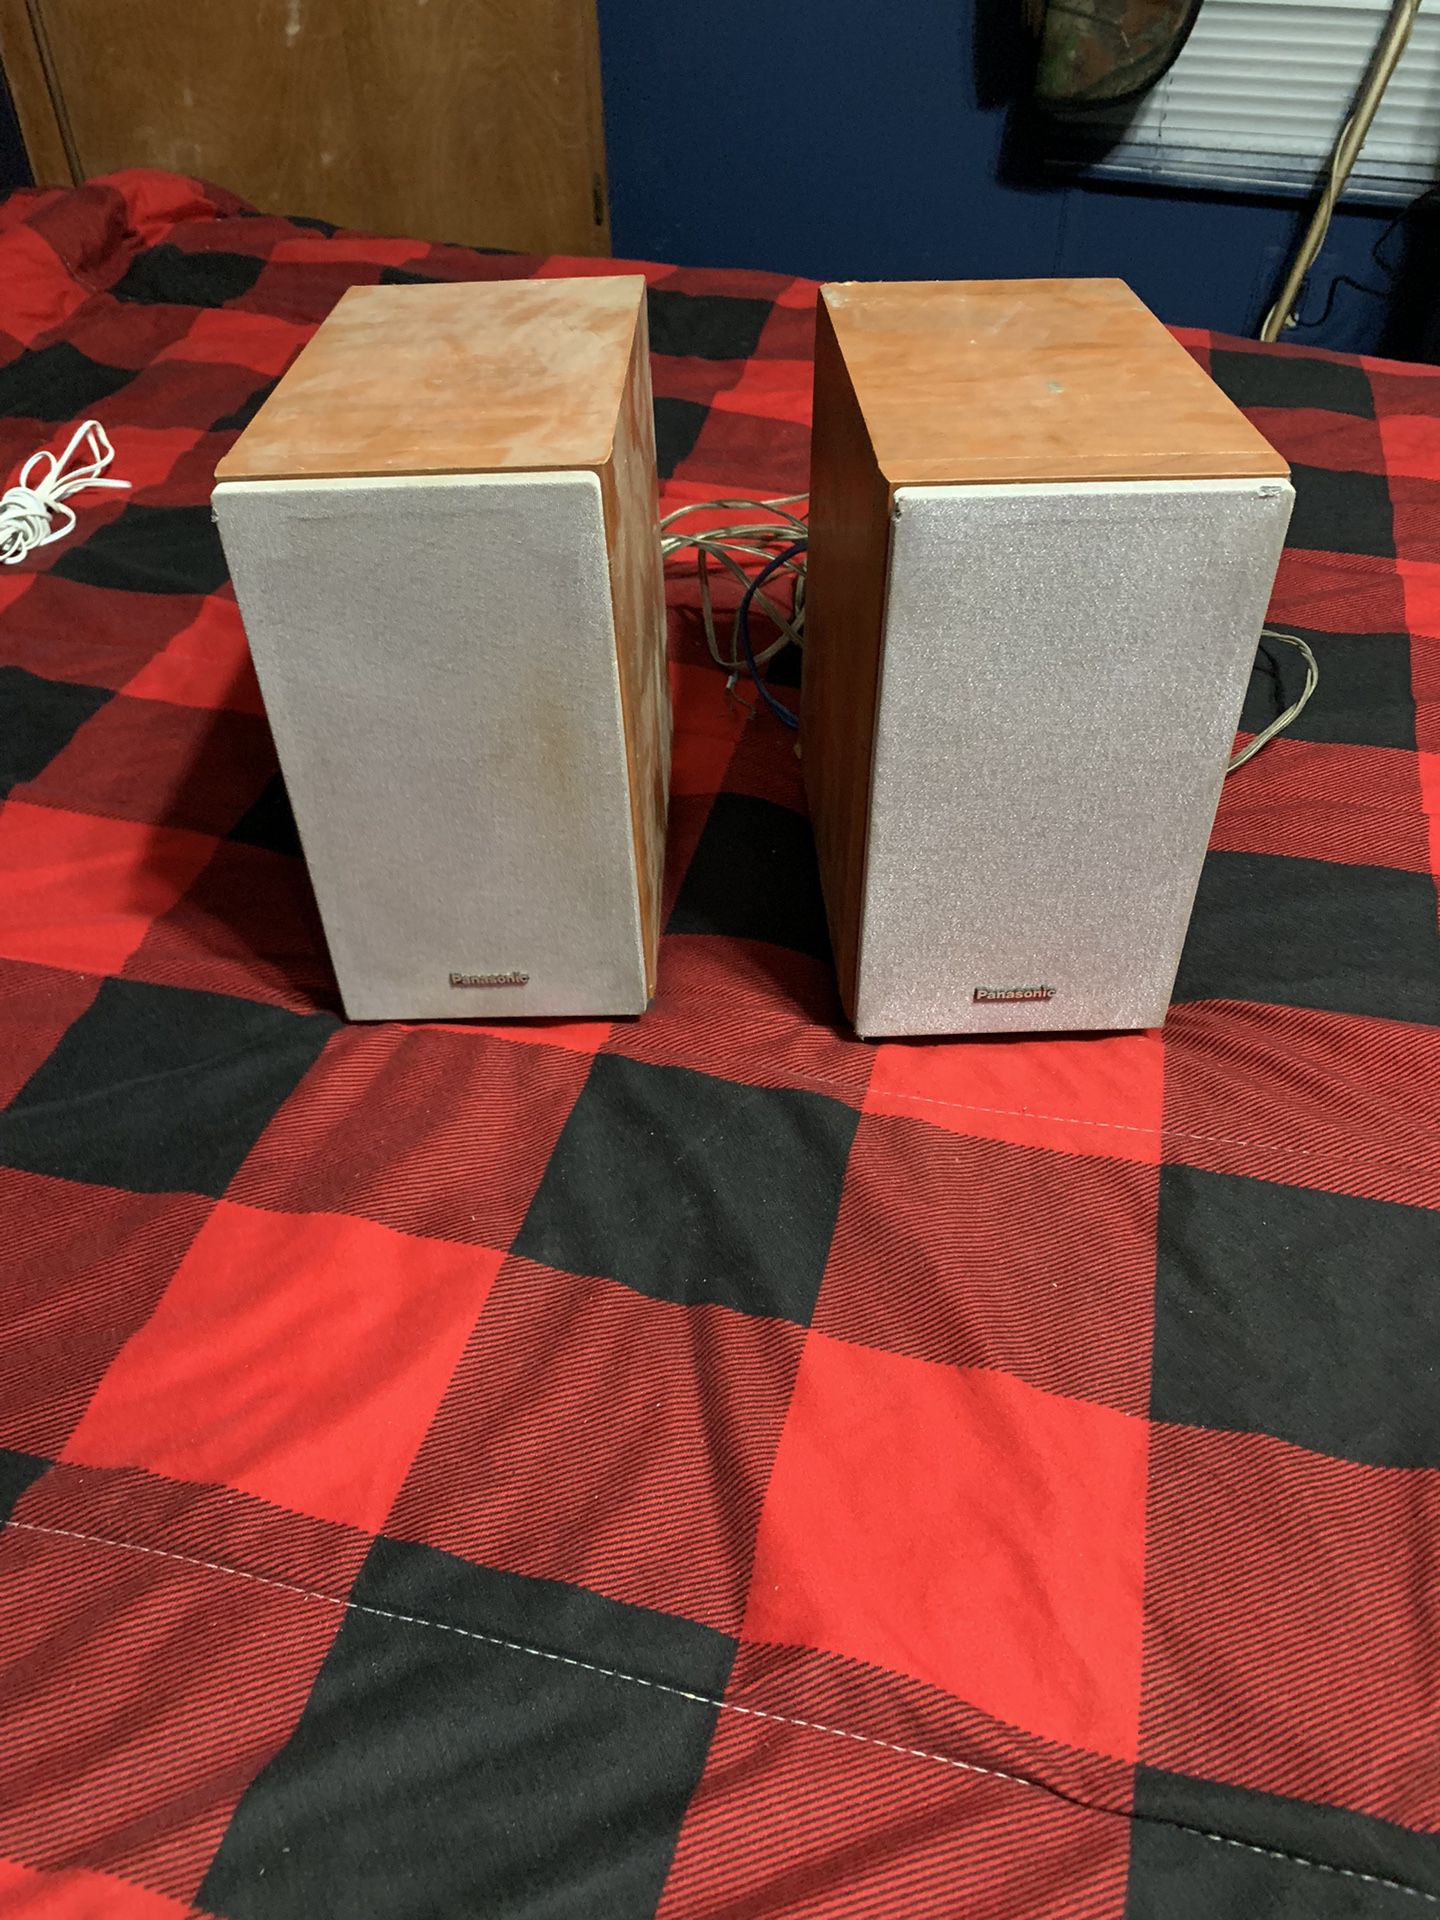 Panasonic Speakers 